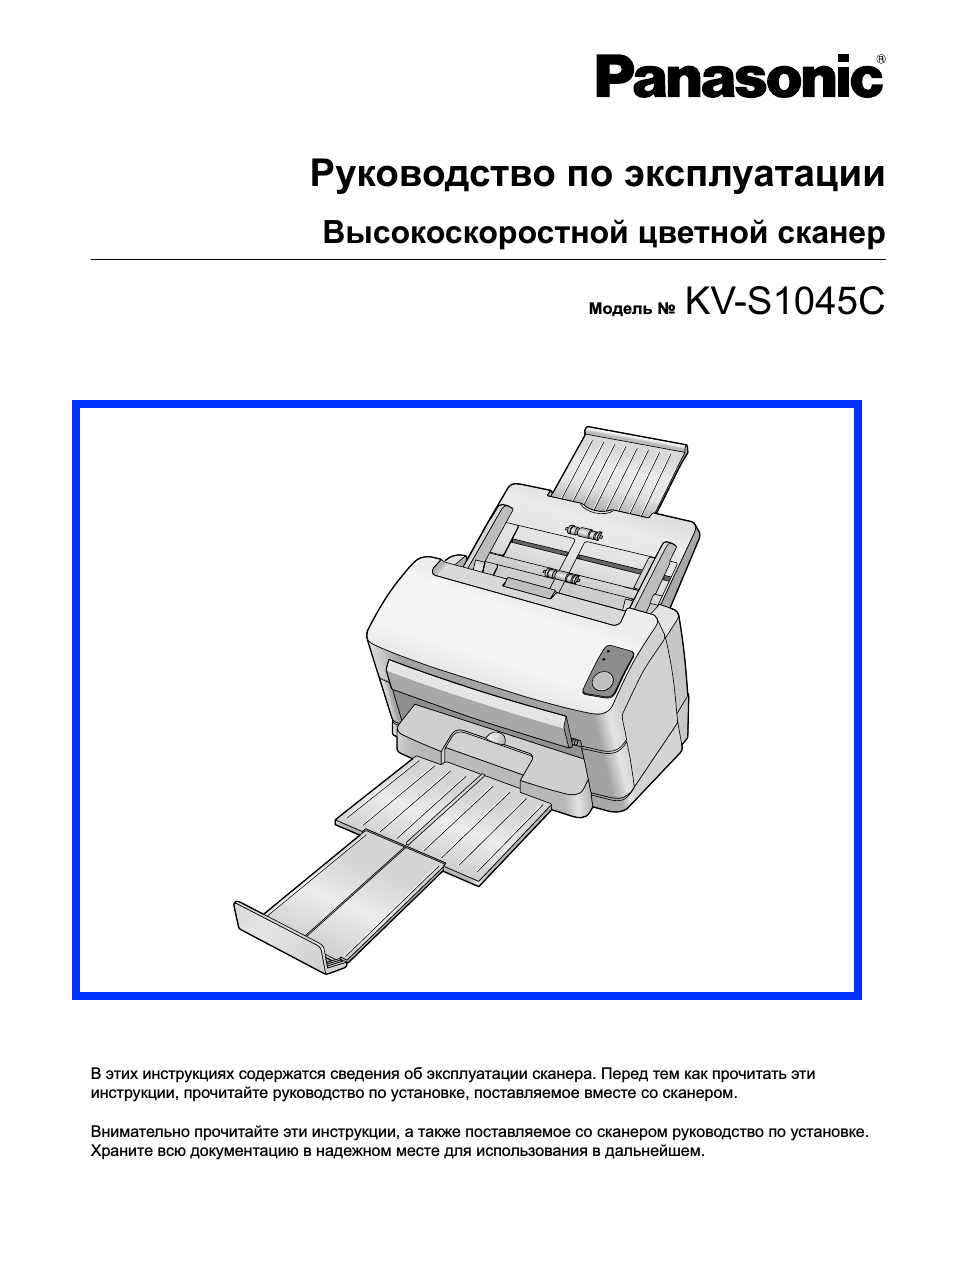 Инструкция по эксплуатации Panasonic KV-S1045C | 53 страницы